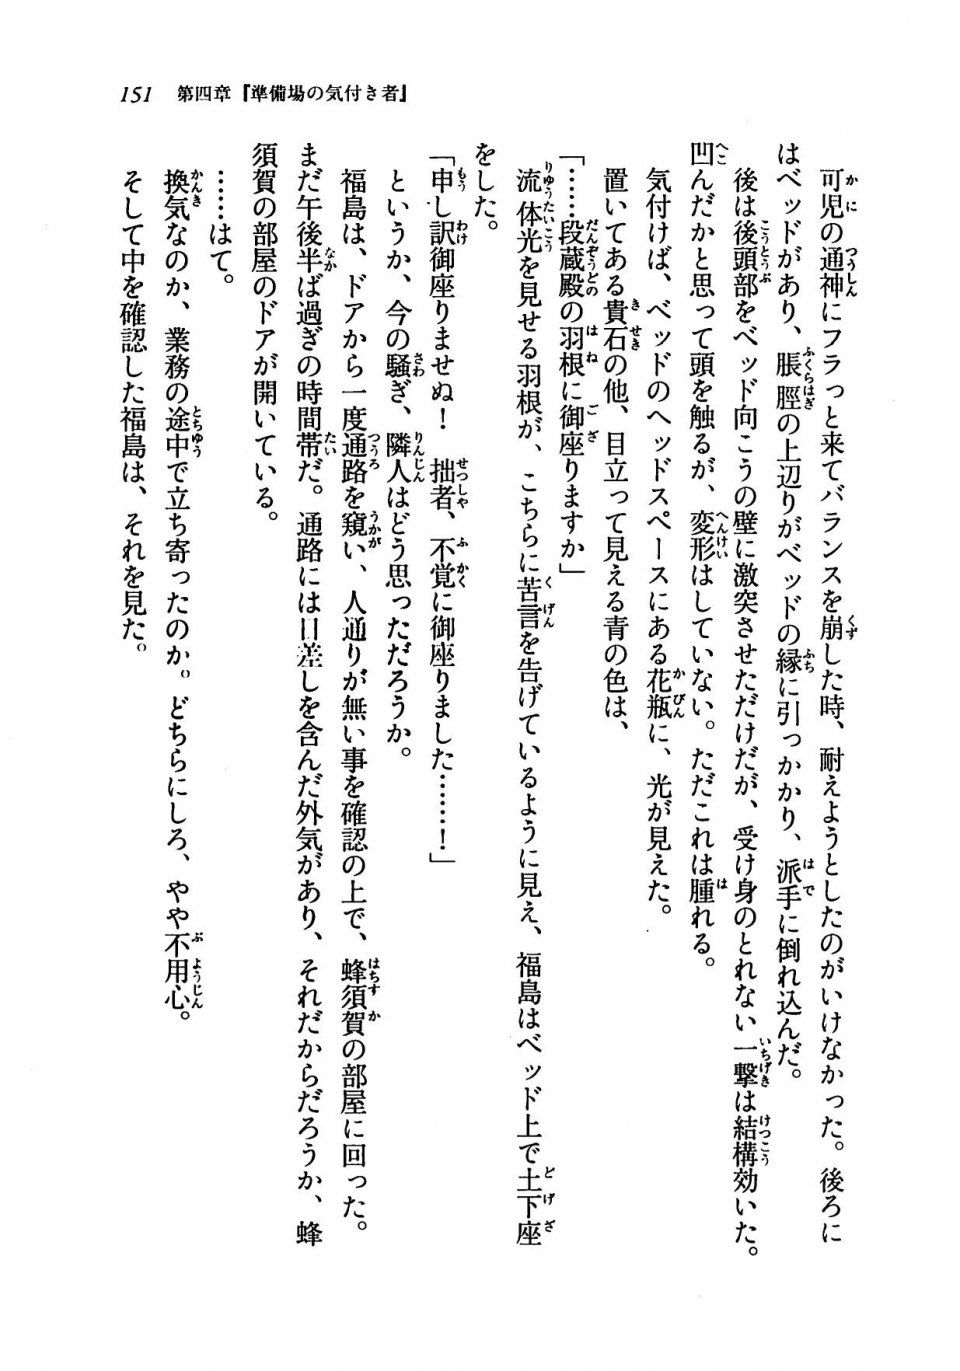 Kyoukai Senjou no Horizon LN Vol 19(8A) - Photo #151